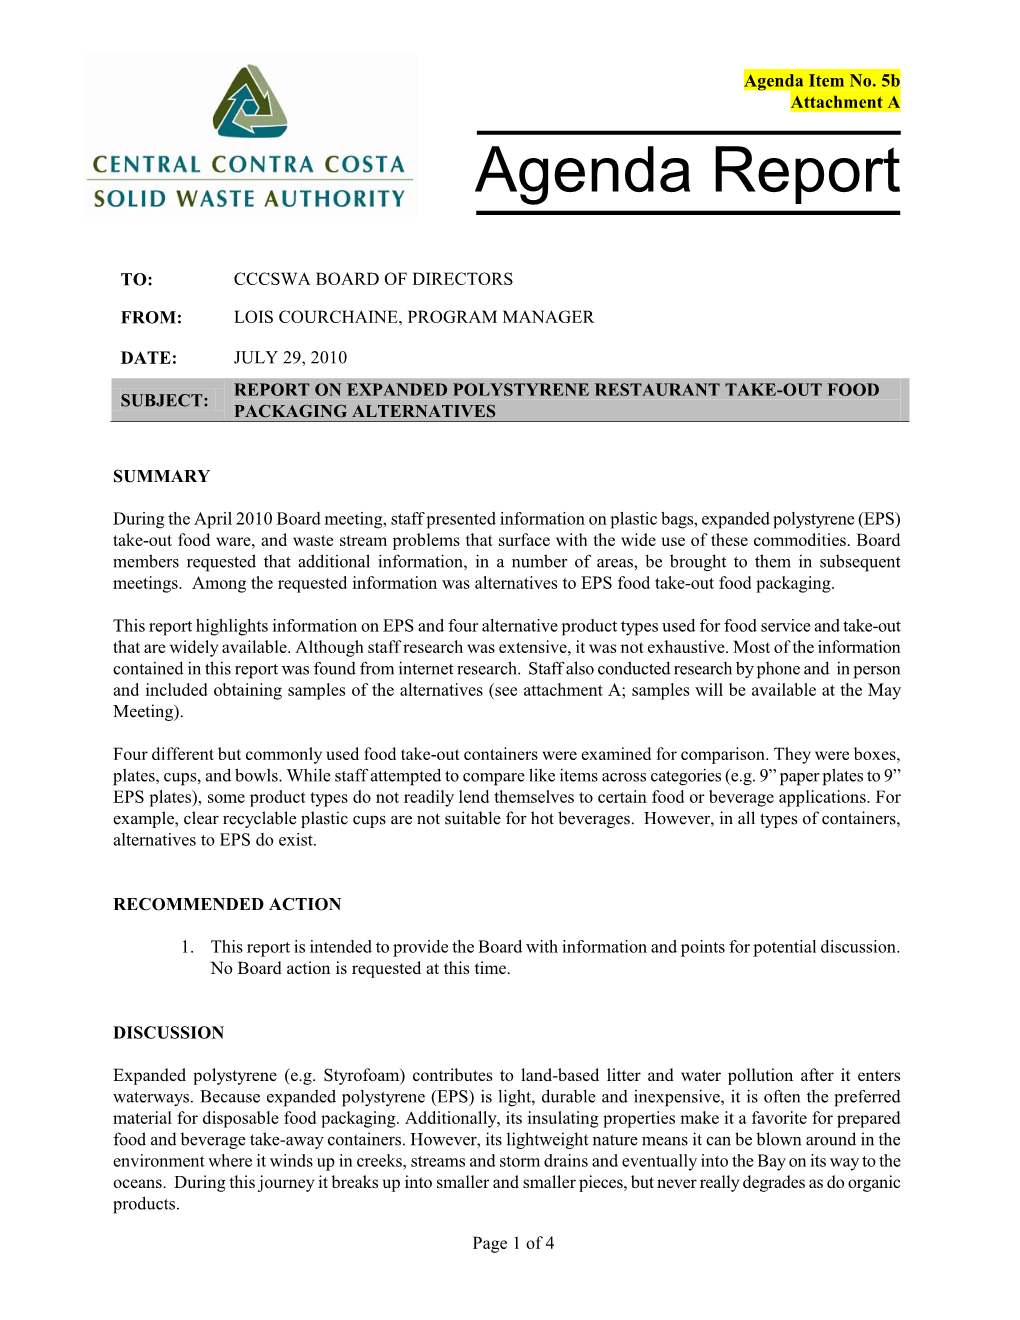 Agenda Report